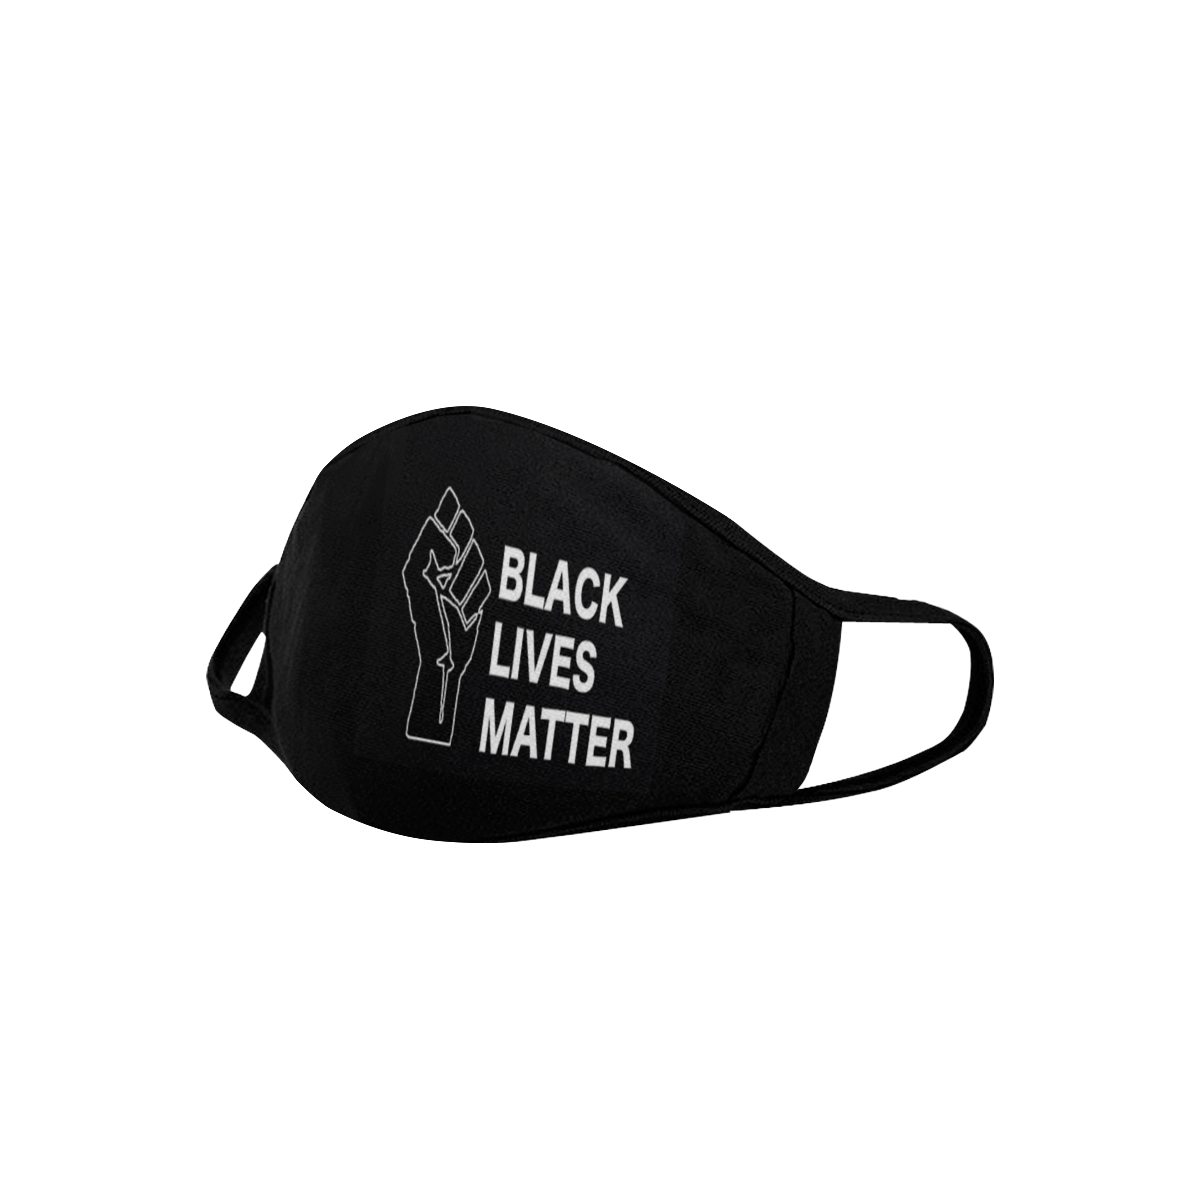 Black Lives Matter Face Mask Mouth Mask